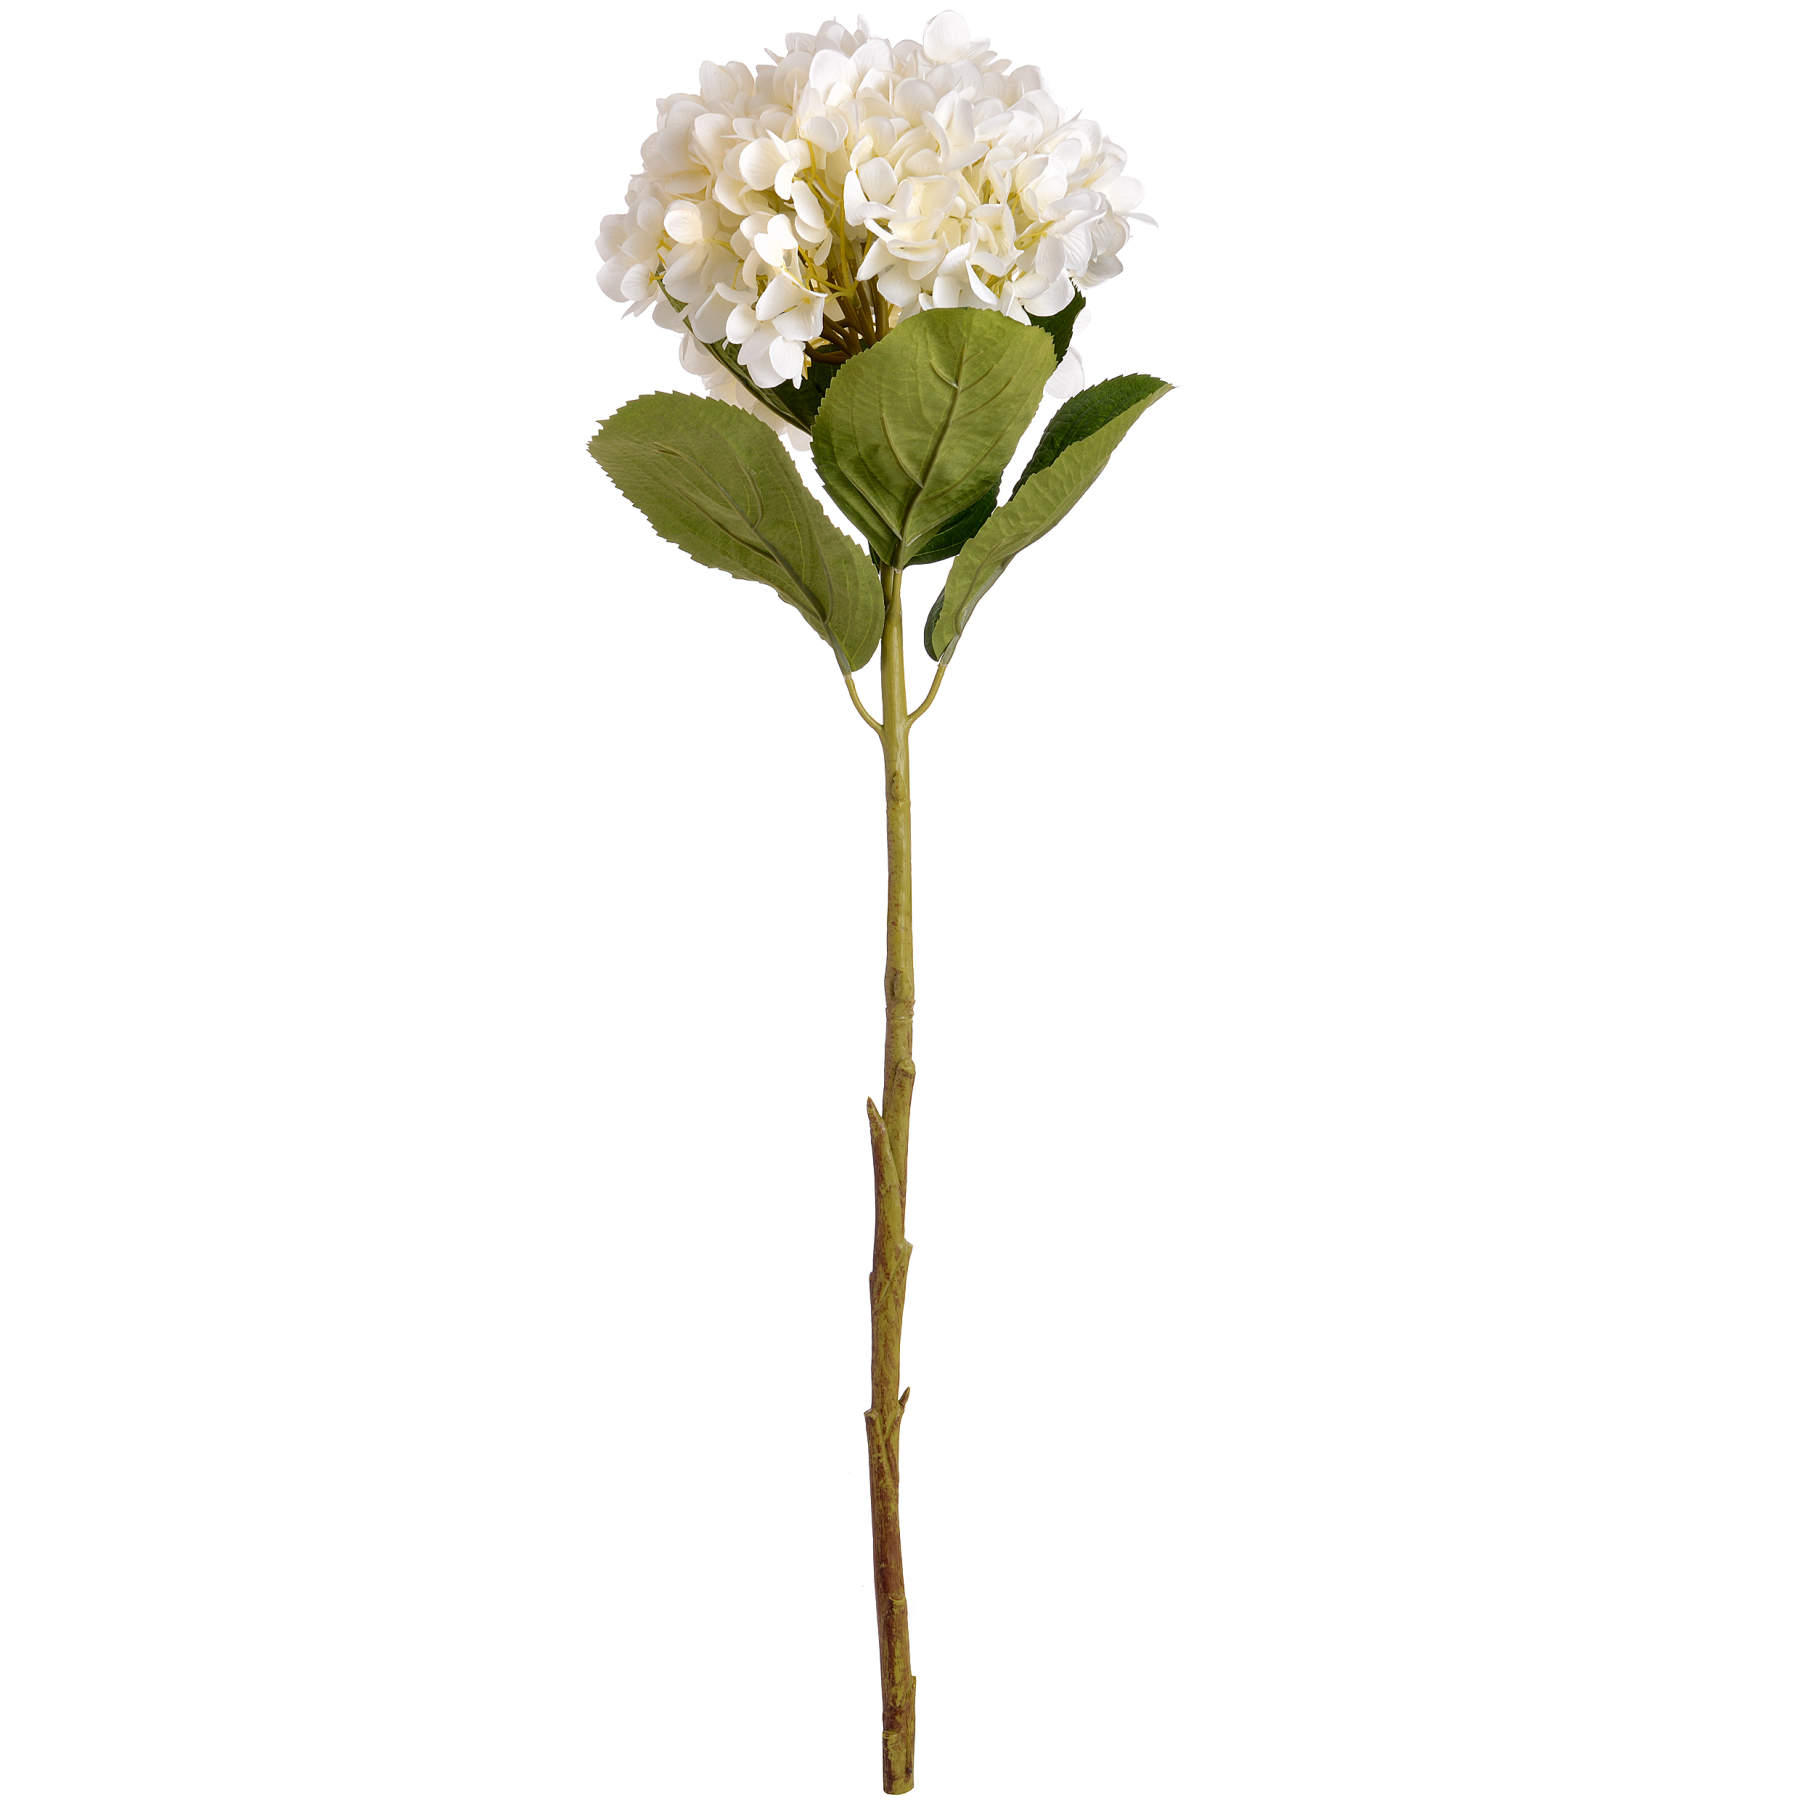 Oversized White Hydrangea - Image 4